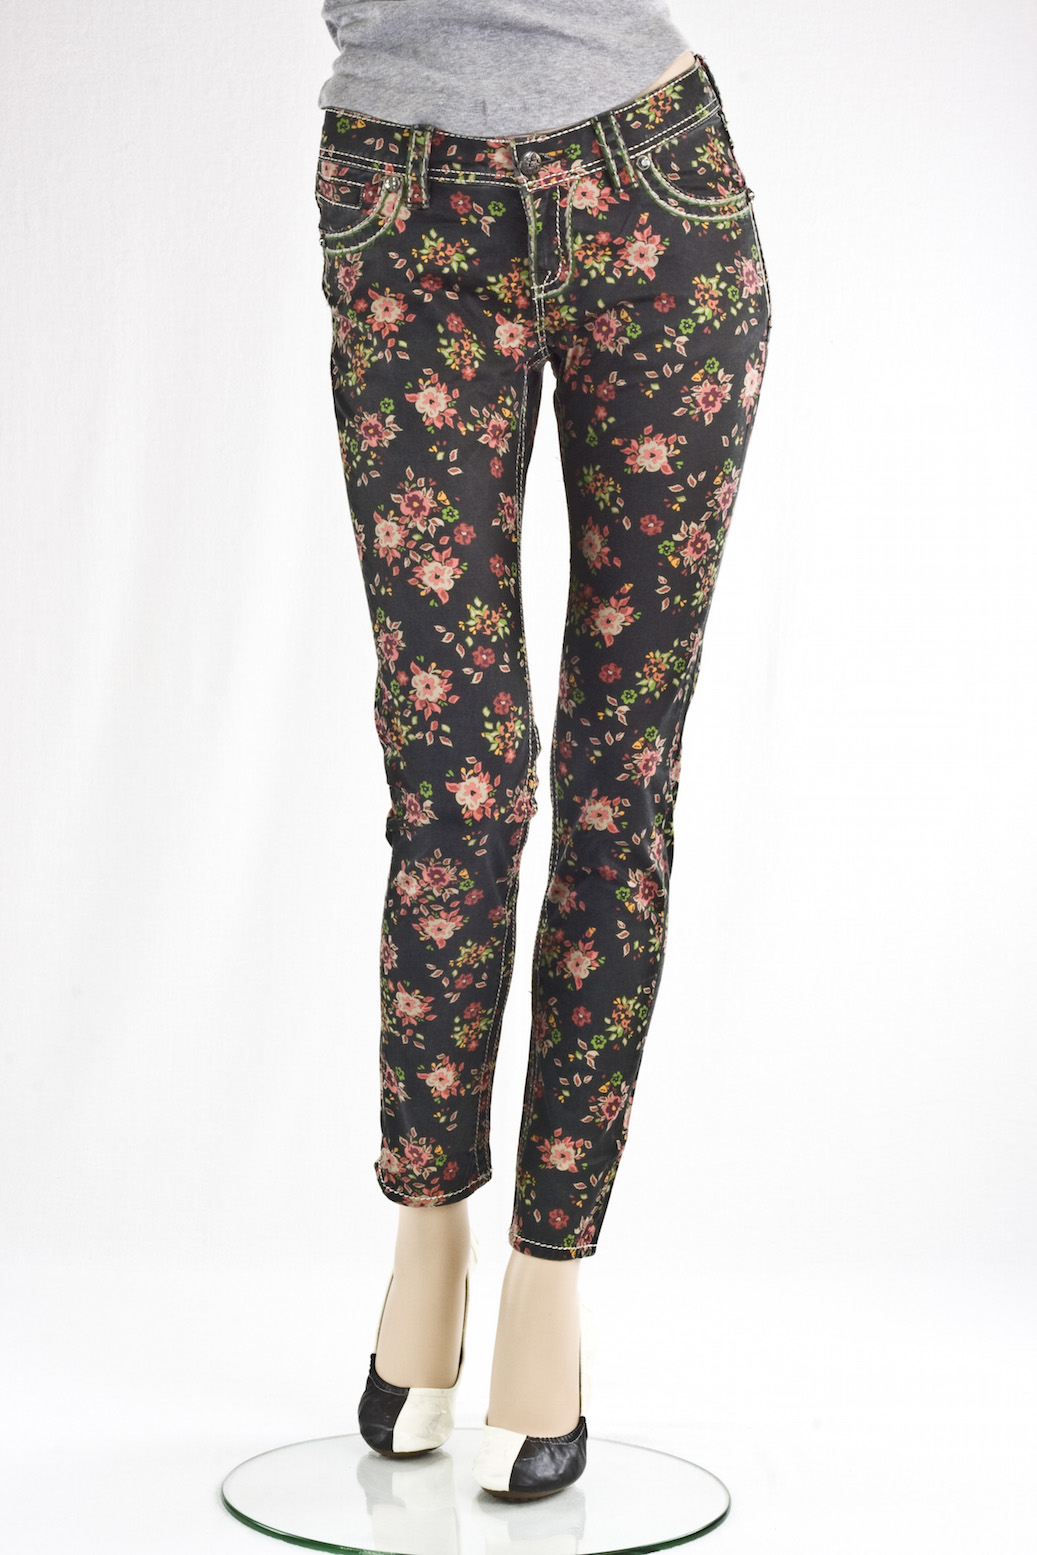 джинсы женские MissMe принтованые "Скини" Floral Print Ankle Skinny